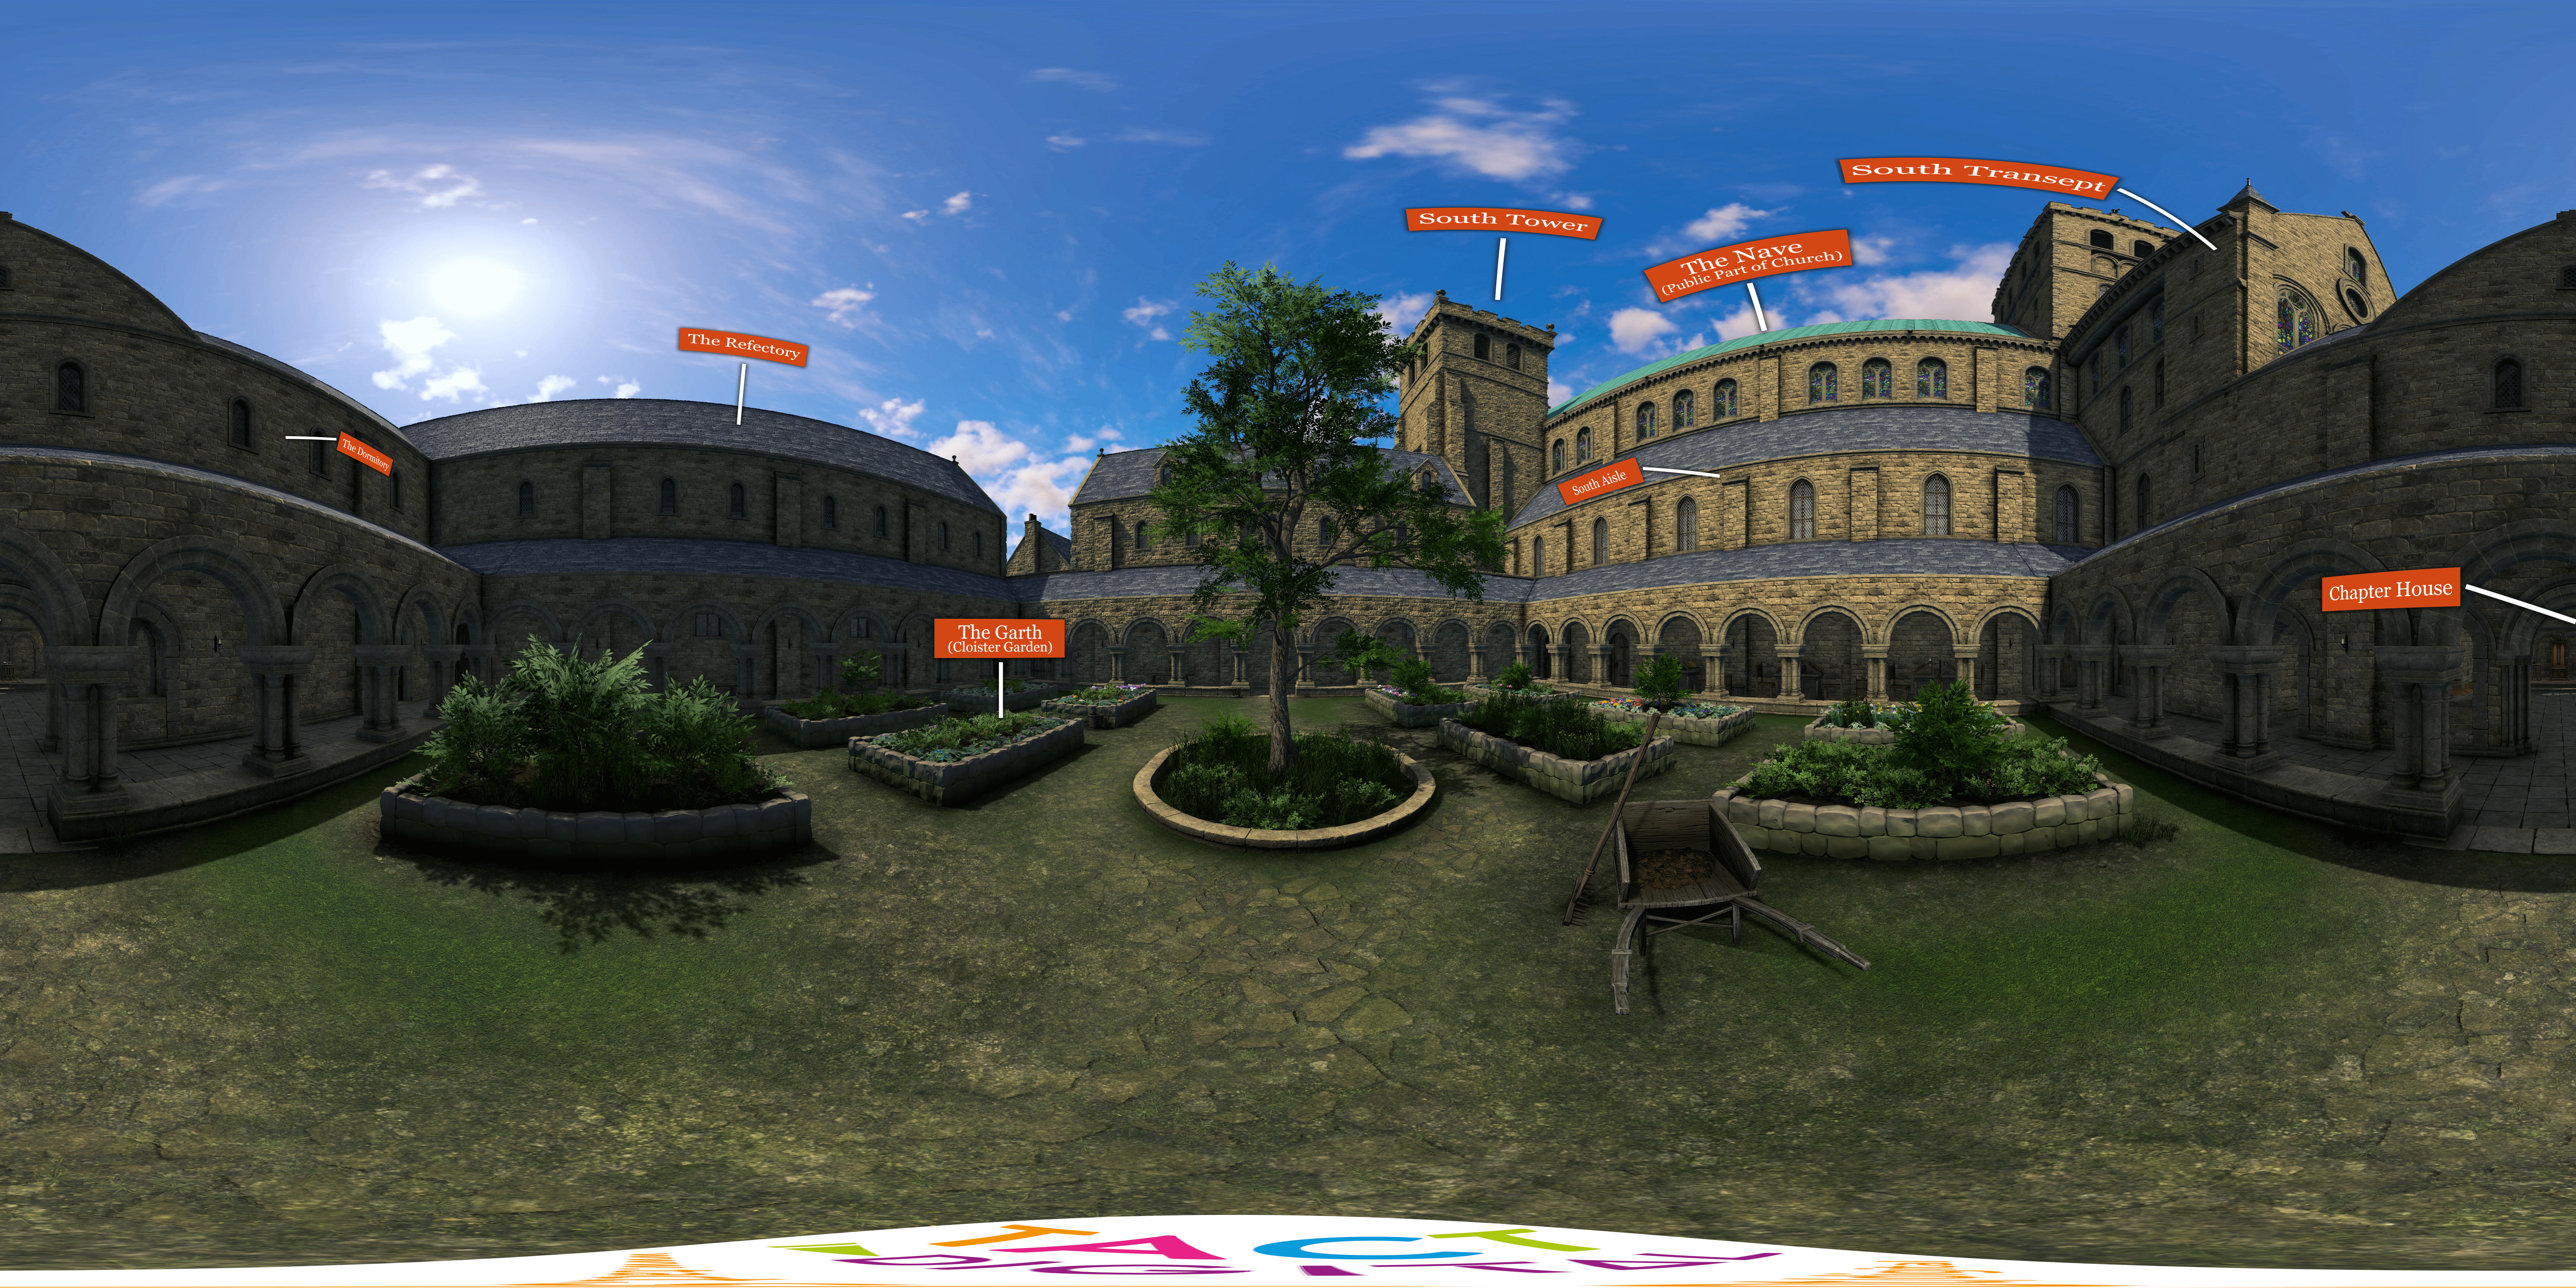 Kilwinning Abbey 3D - Cloister Garden View